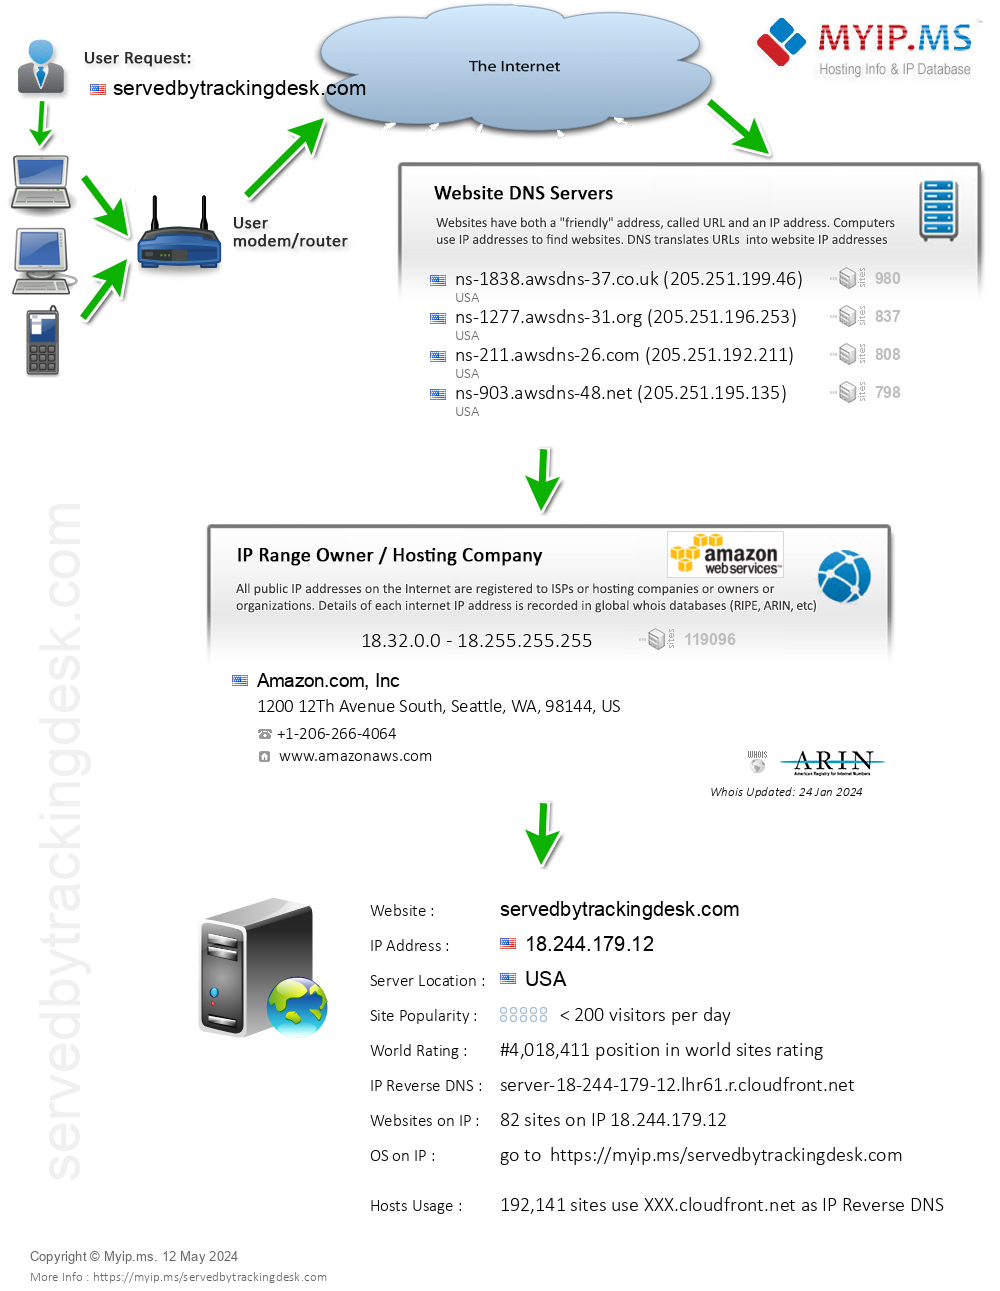 Servedbytrackingdesk.com - Website Hosting Visual IP Diagram